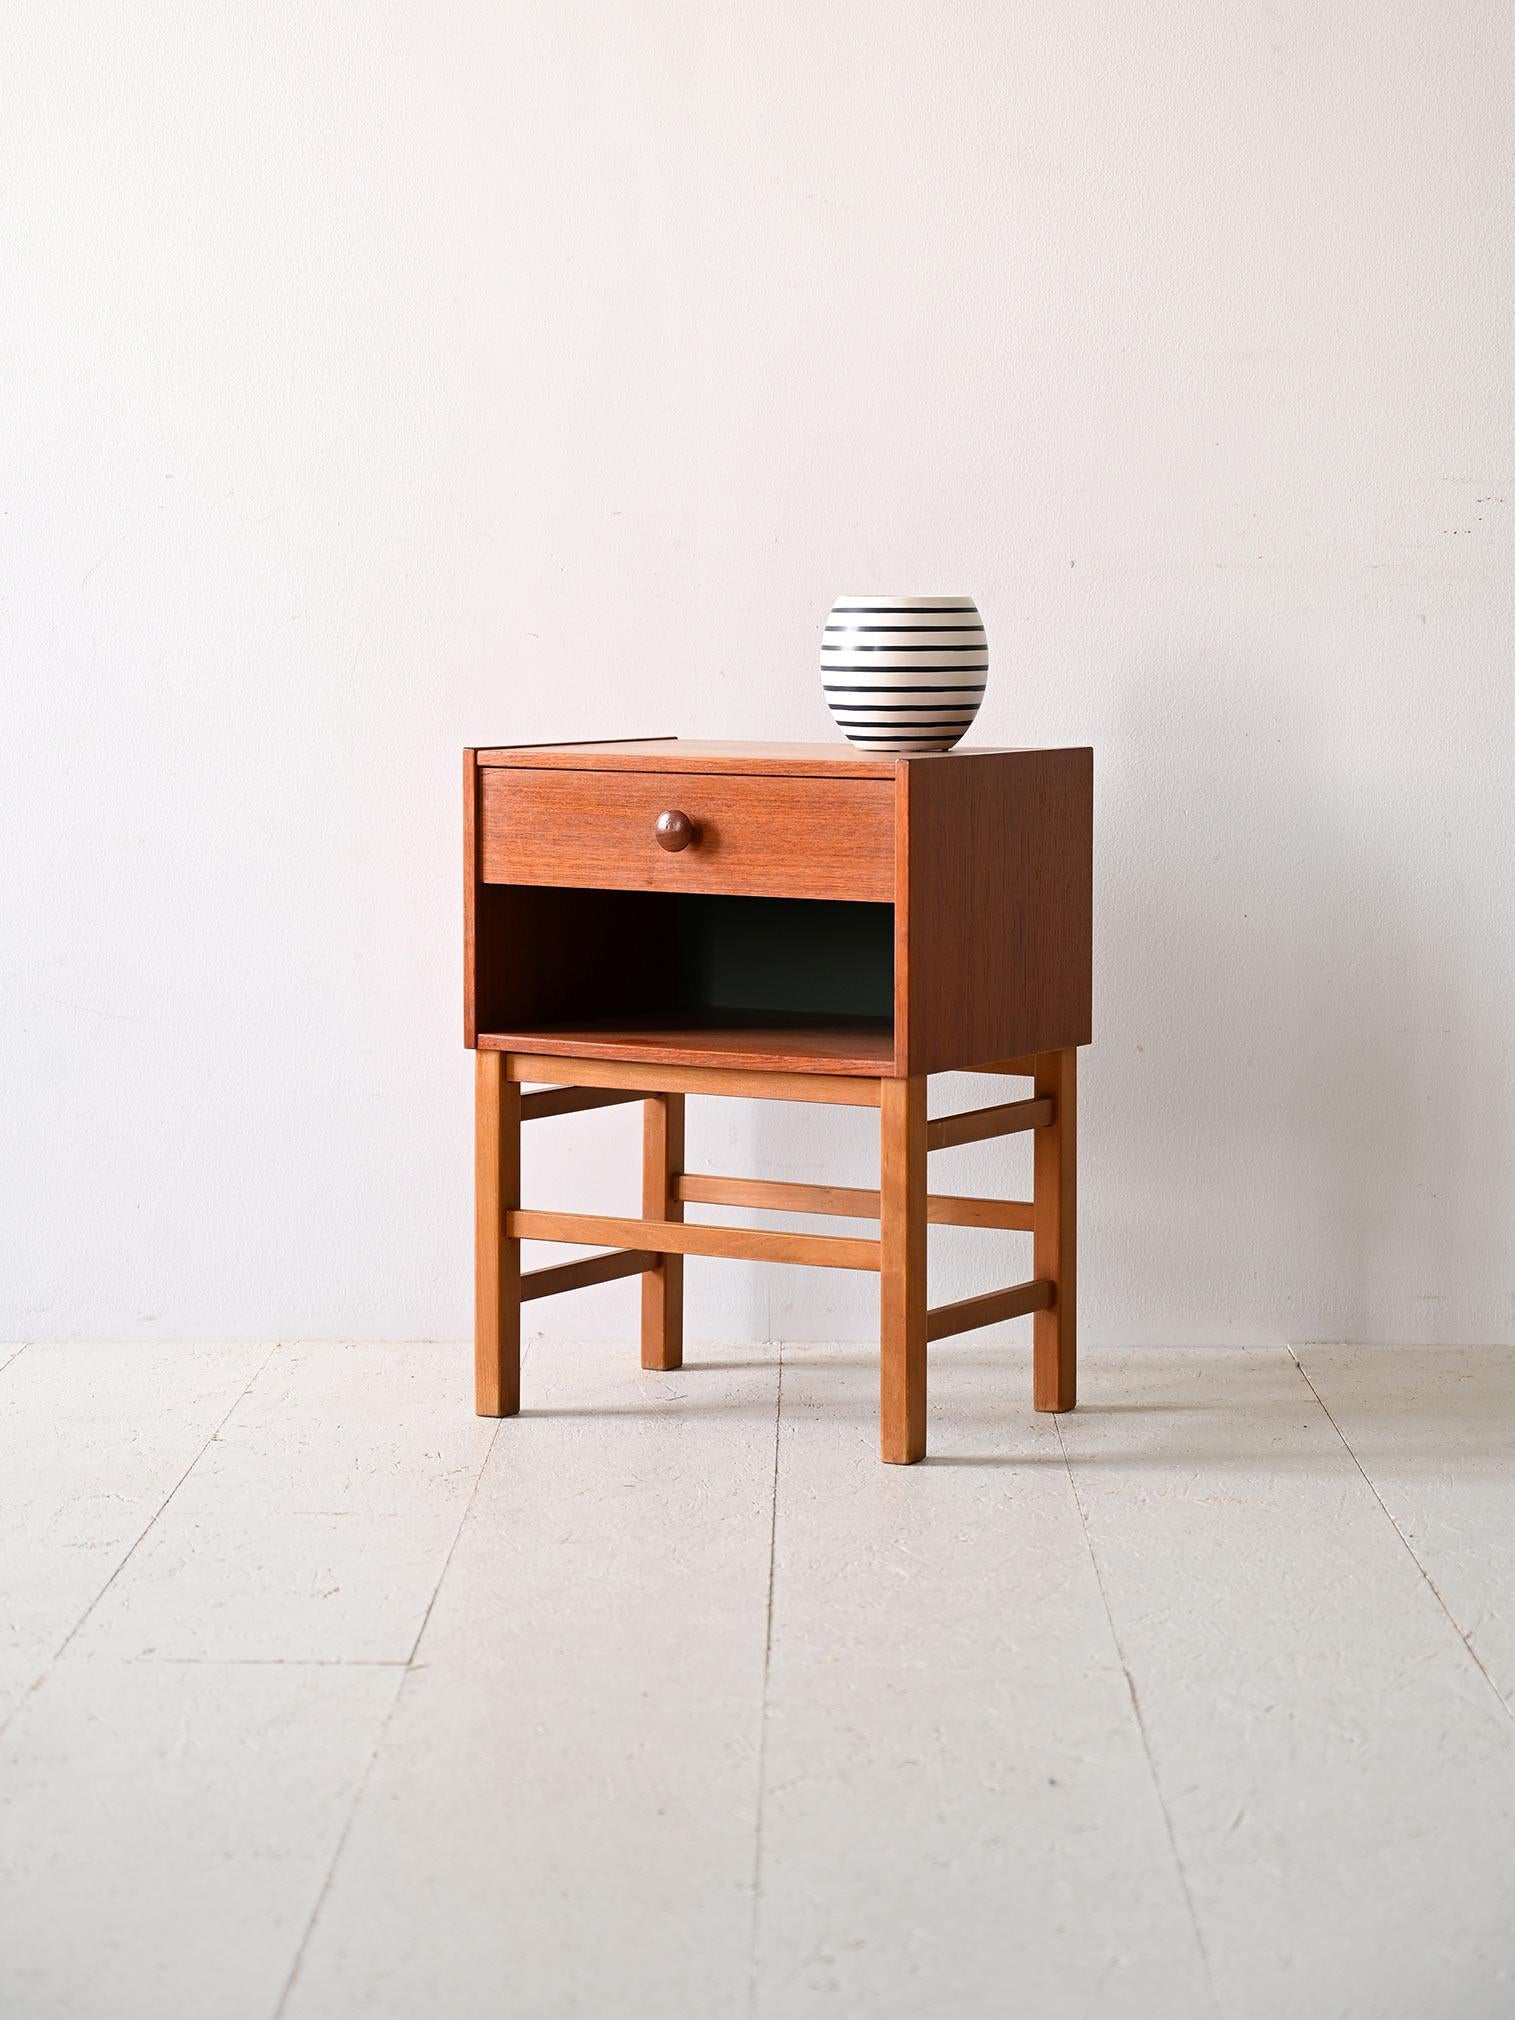 Table de chevet suédoise des années 1960 avec tiroir.

Cette table de chevet compacte se distingue non seulement par sa forme minimaliste, mais offre également une fonctionnalité maximale grâce à sa grande étagère. Le tiroir, en teck, ajoute une